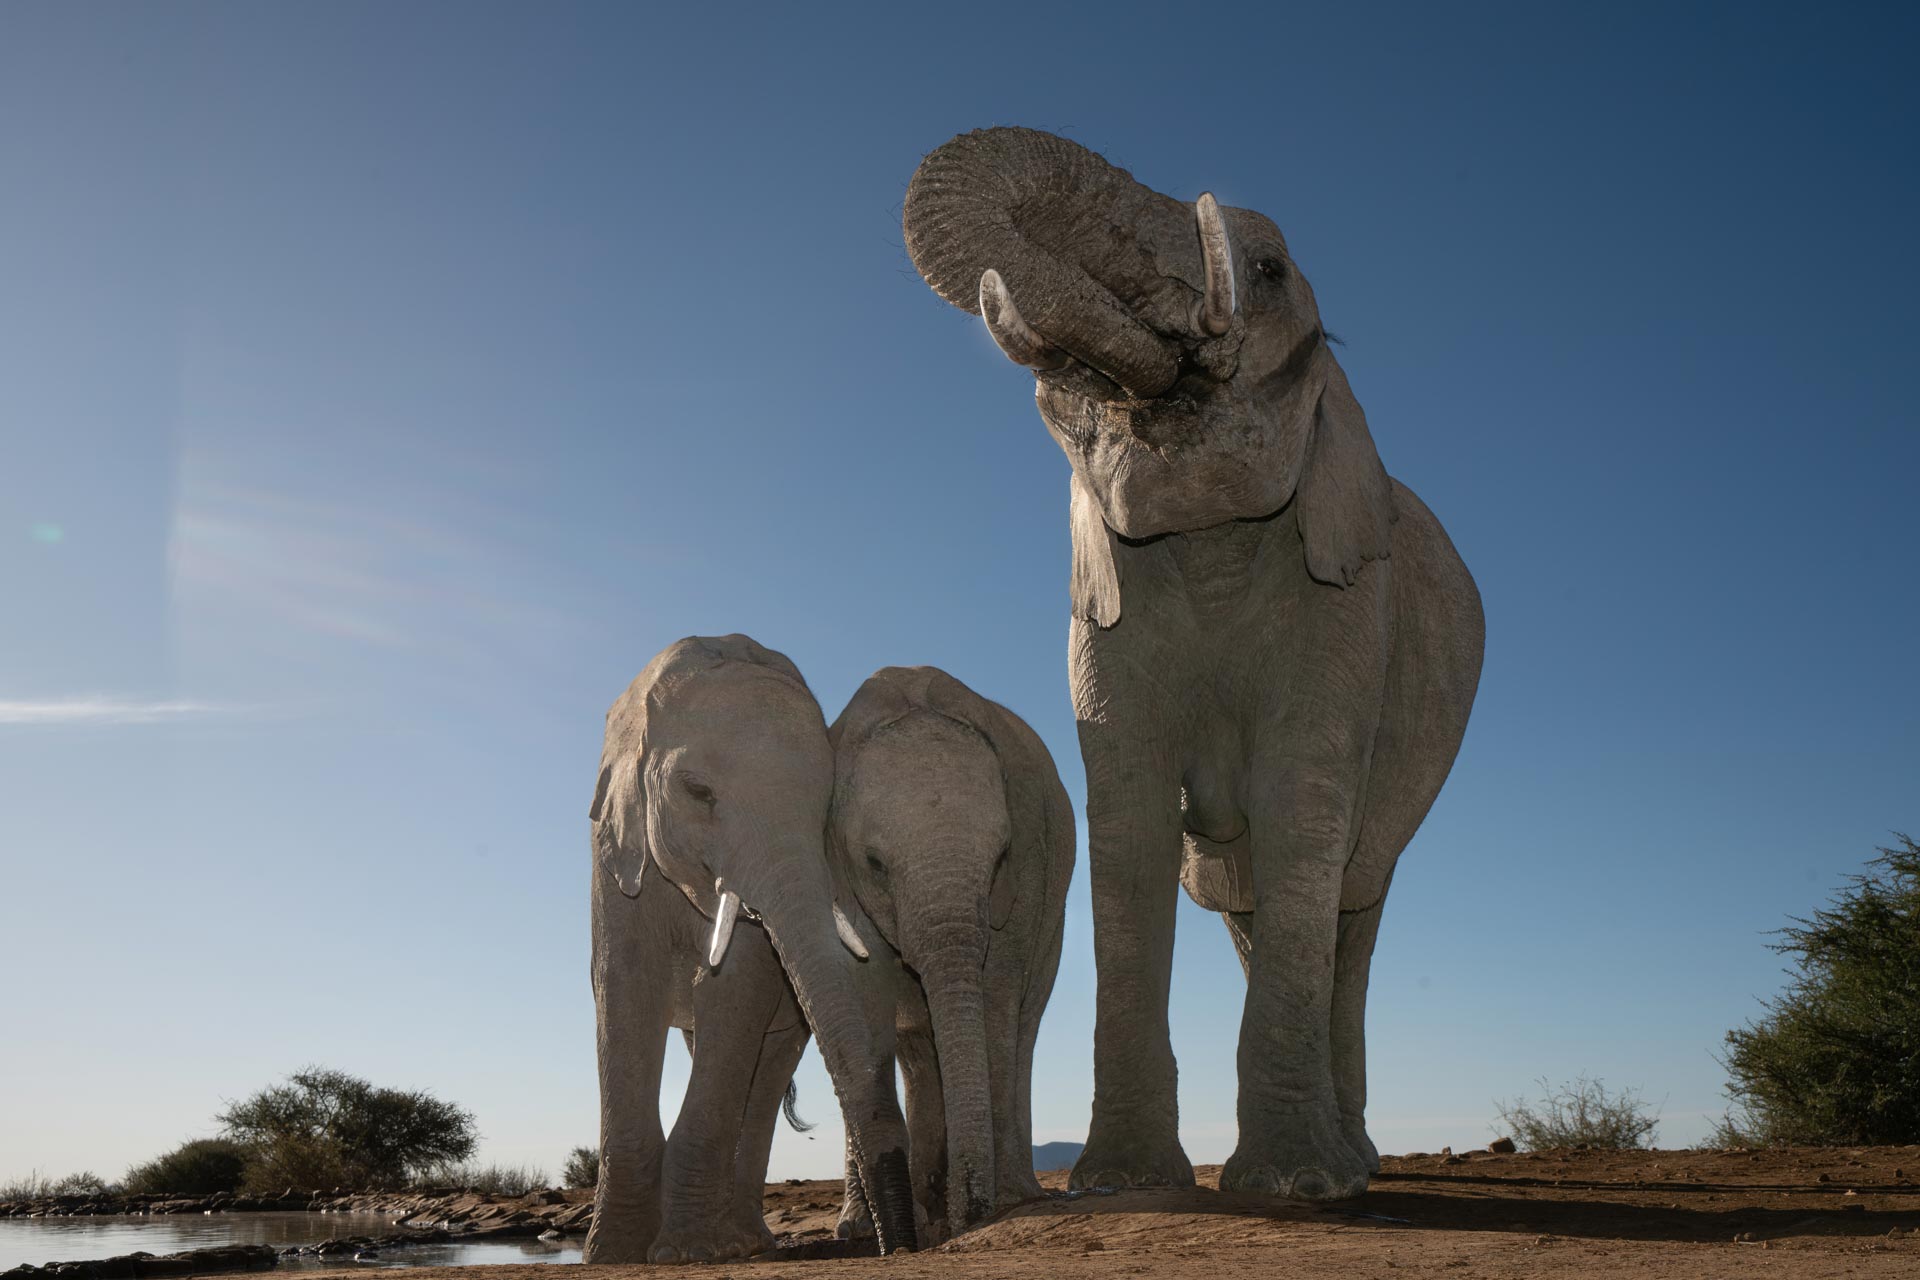 Elephant family at the waterhole